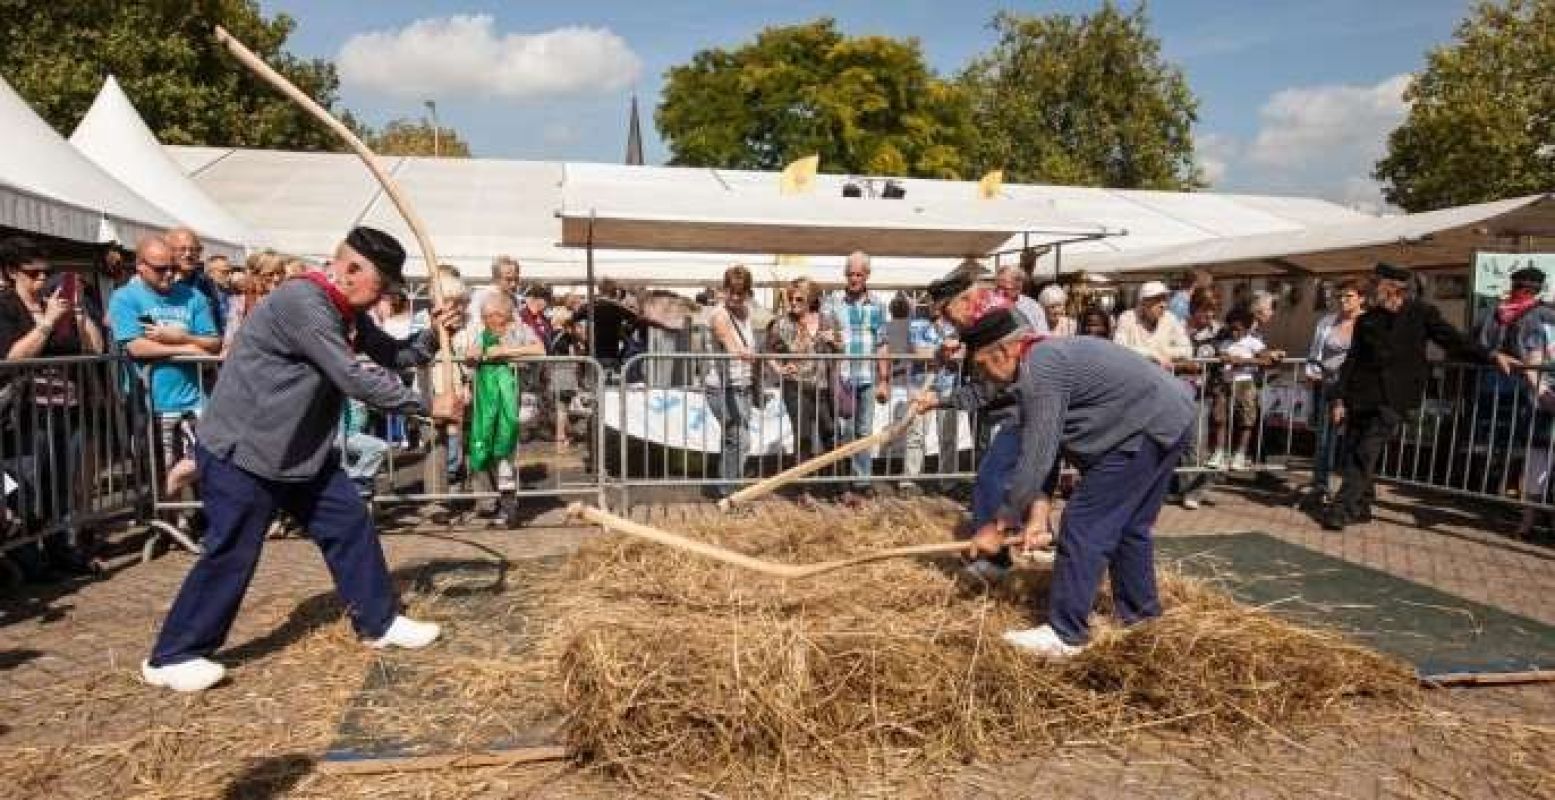 Het oogstfeest in Raalte is uitgegroeid tot een heel festival. Foto: Stöppelhaene